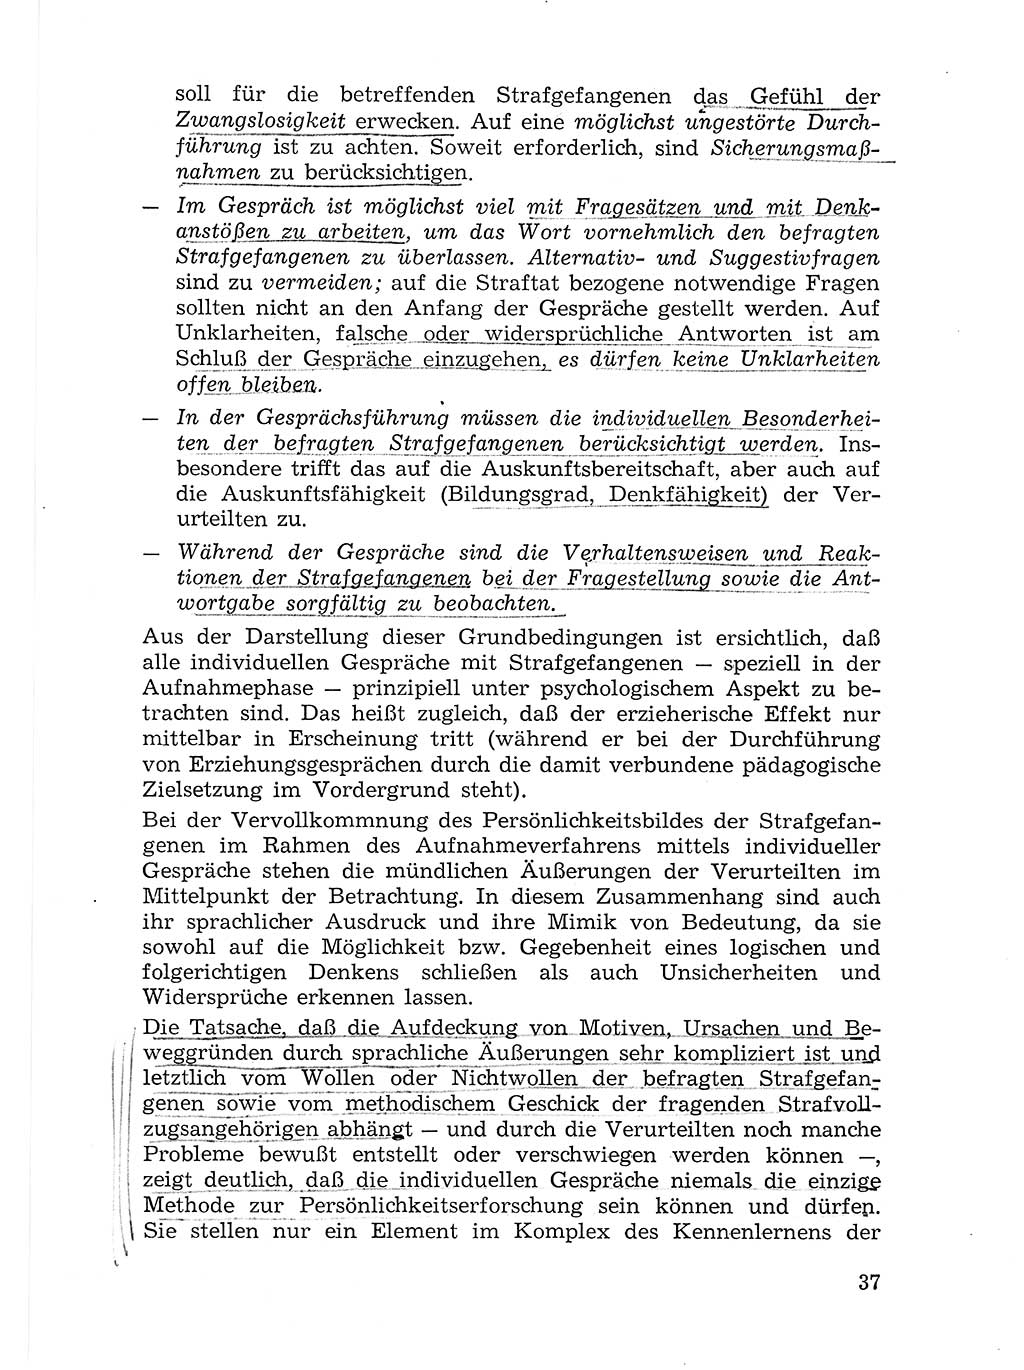 Sozialistischer Strafvollzug (SV) [Deutsche Demokratische Republik (DDR)] 1972, Seite 37 (Soz. SV DDR 1972, S. 37)